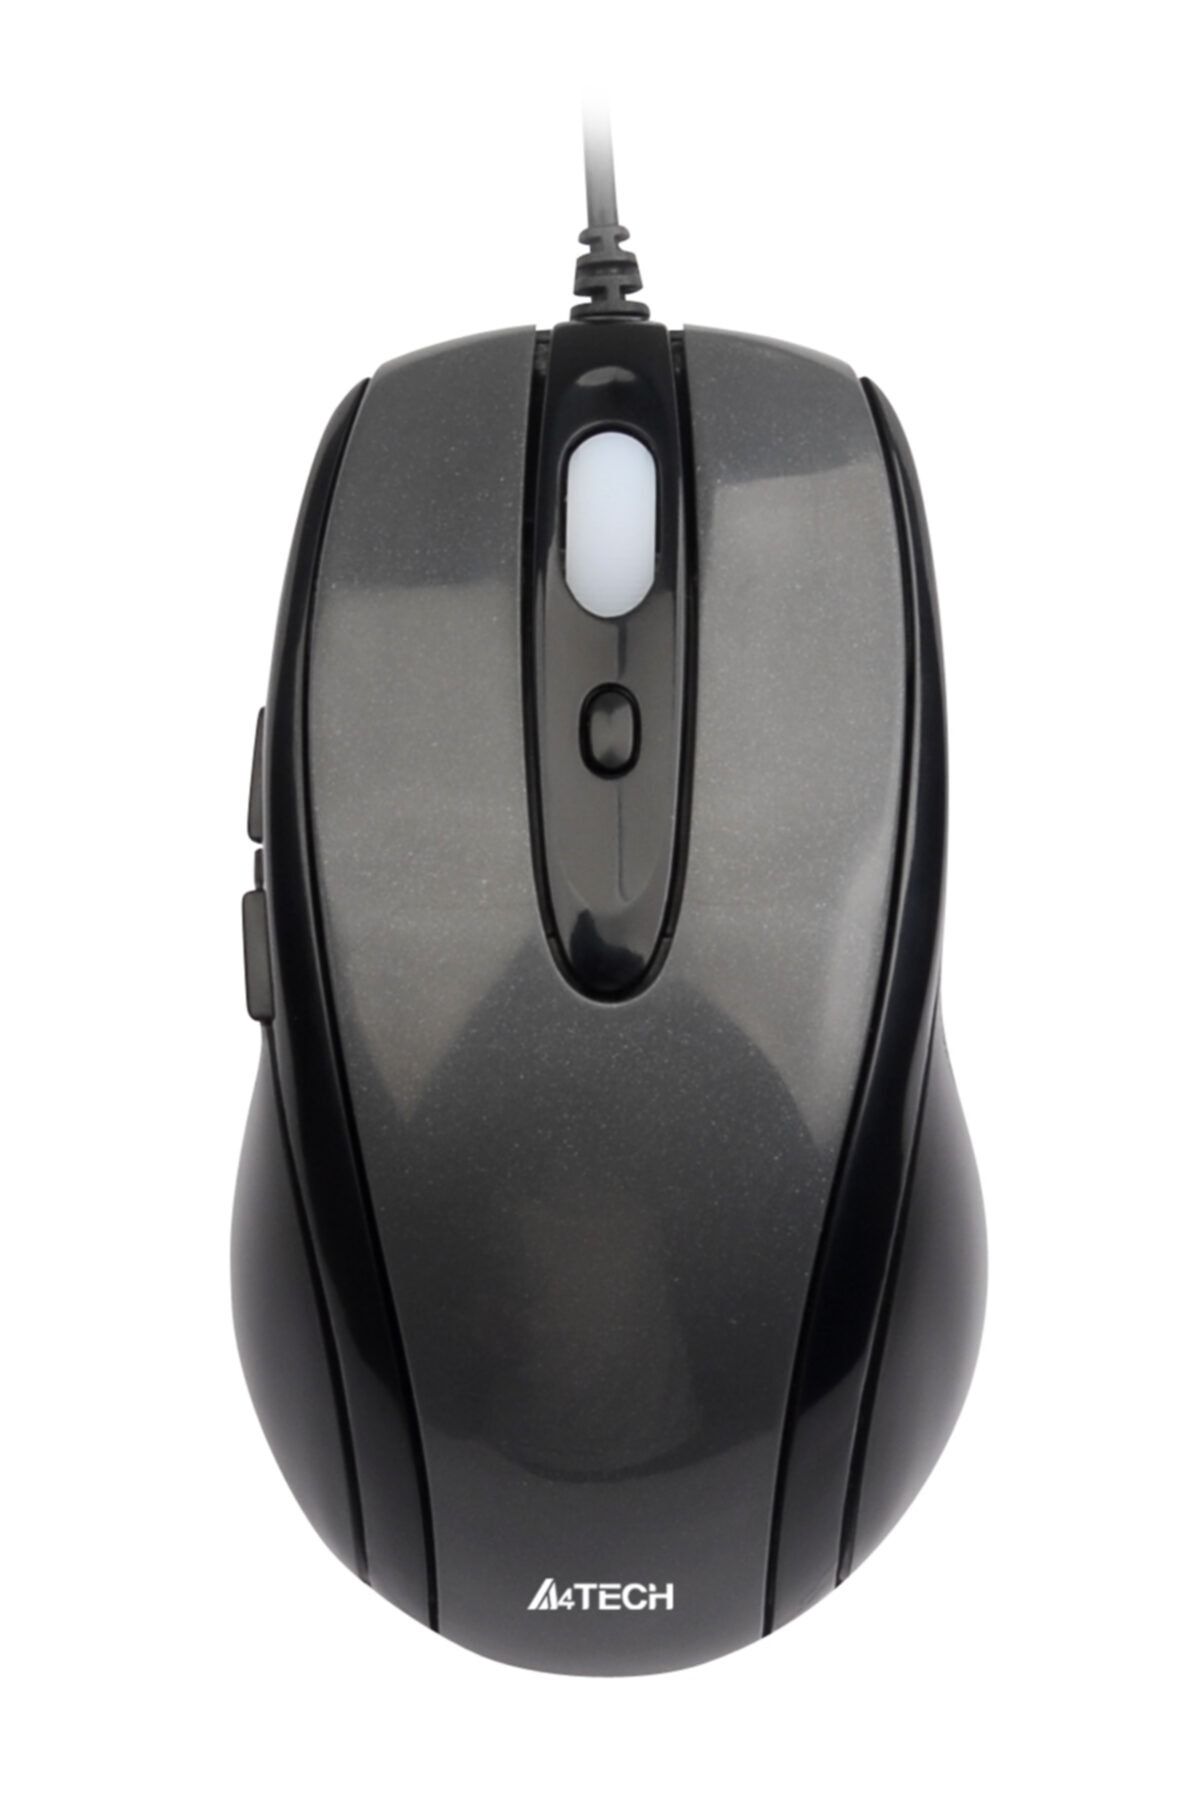 A4 Tech N-708x Siyah Usb Gri V-track Mouse